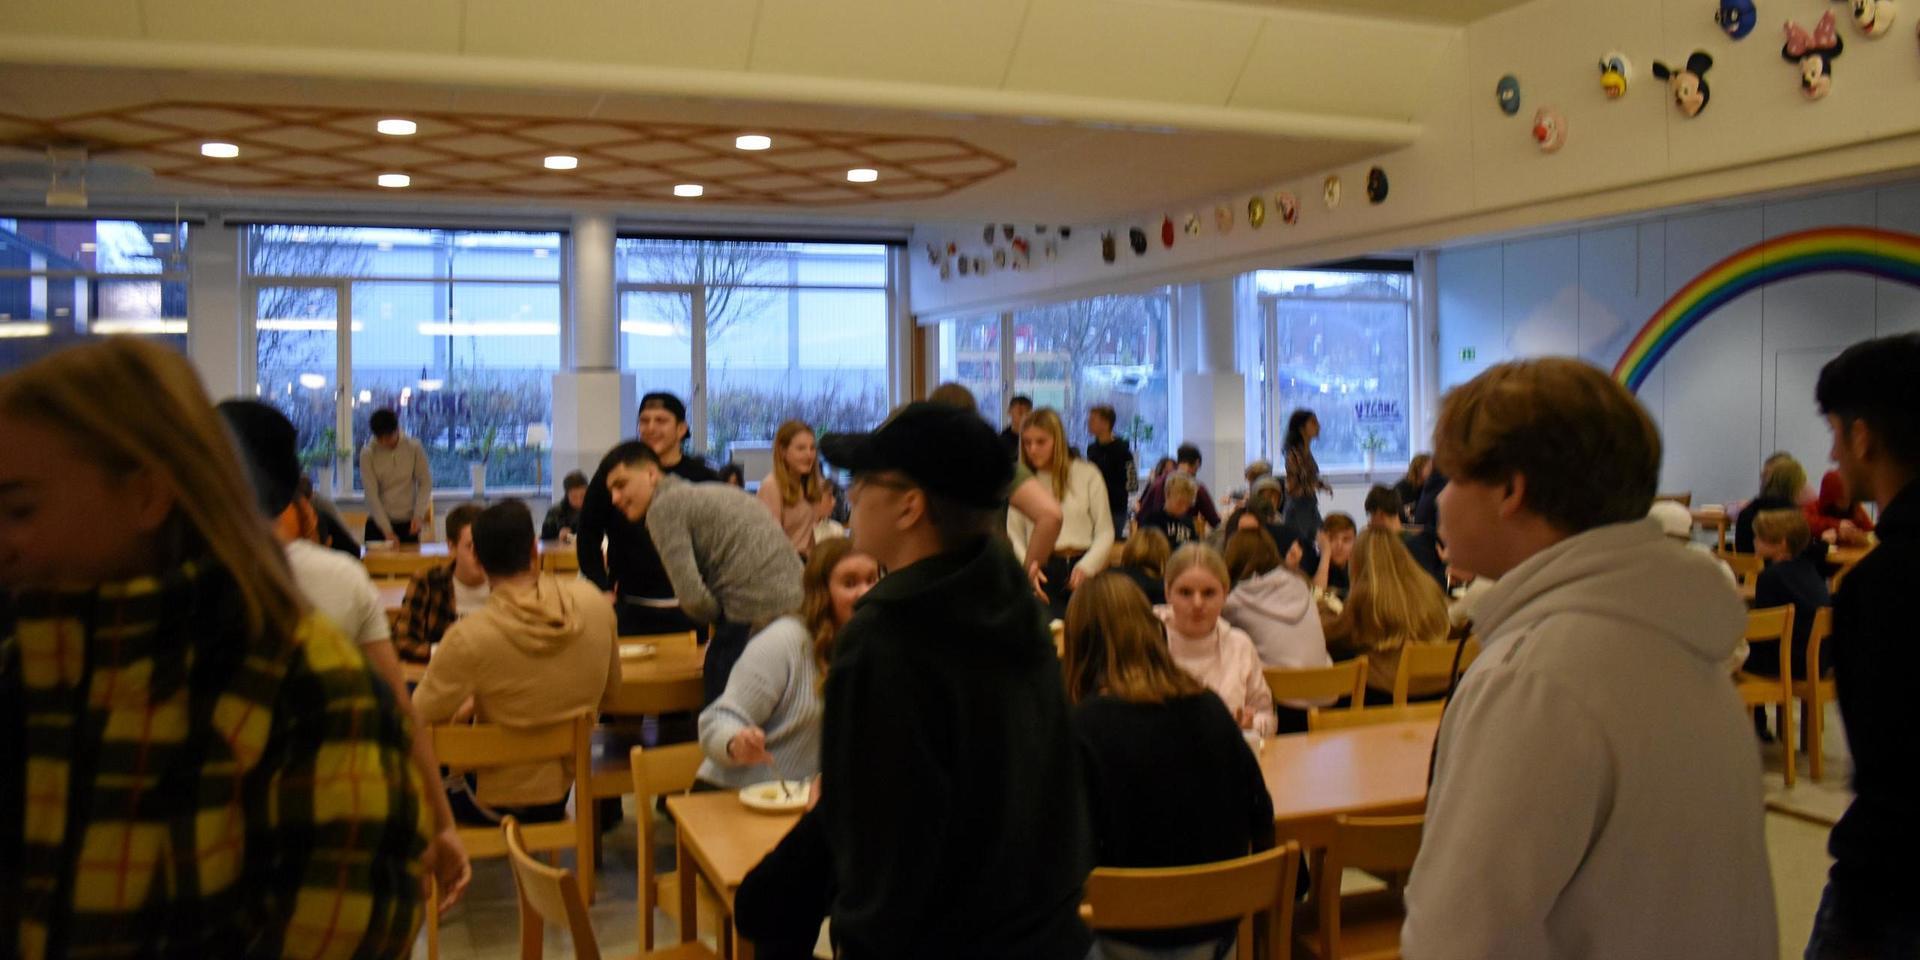 Matsalen på Örnaskolan har kritiserats för att var coronamässigt otrygg, genom att många elever samsas om begränsat utrymme.